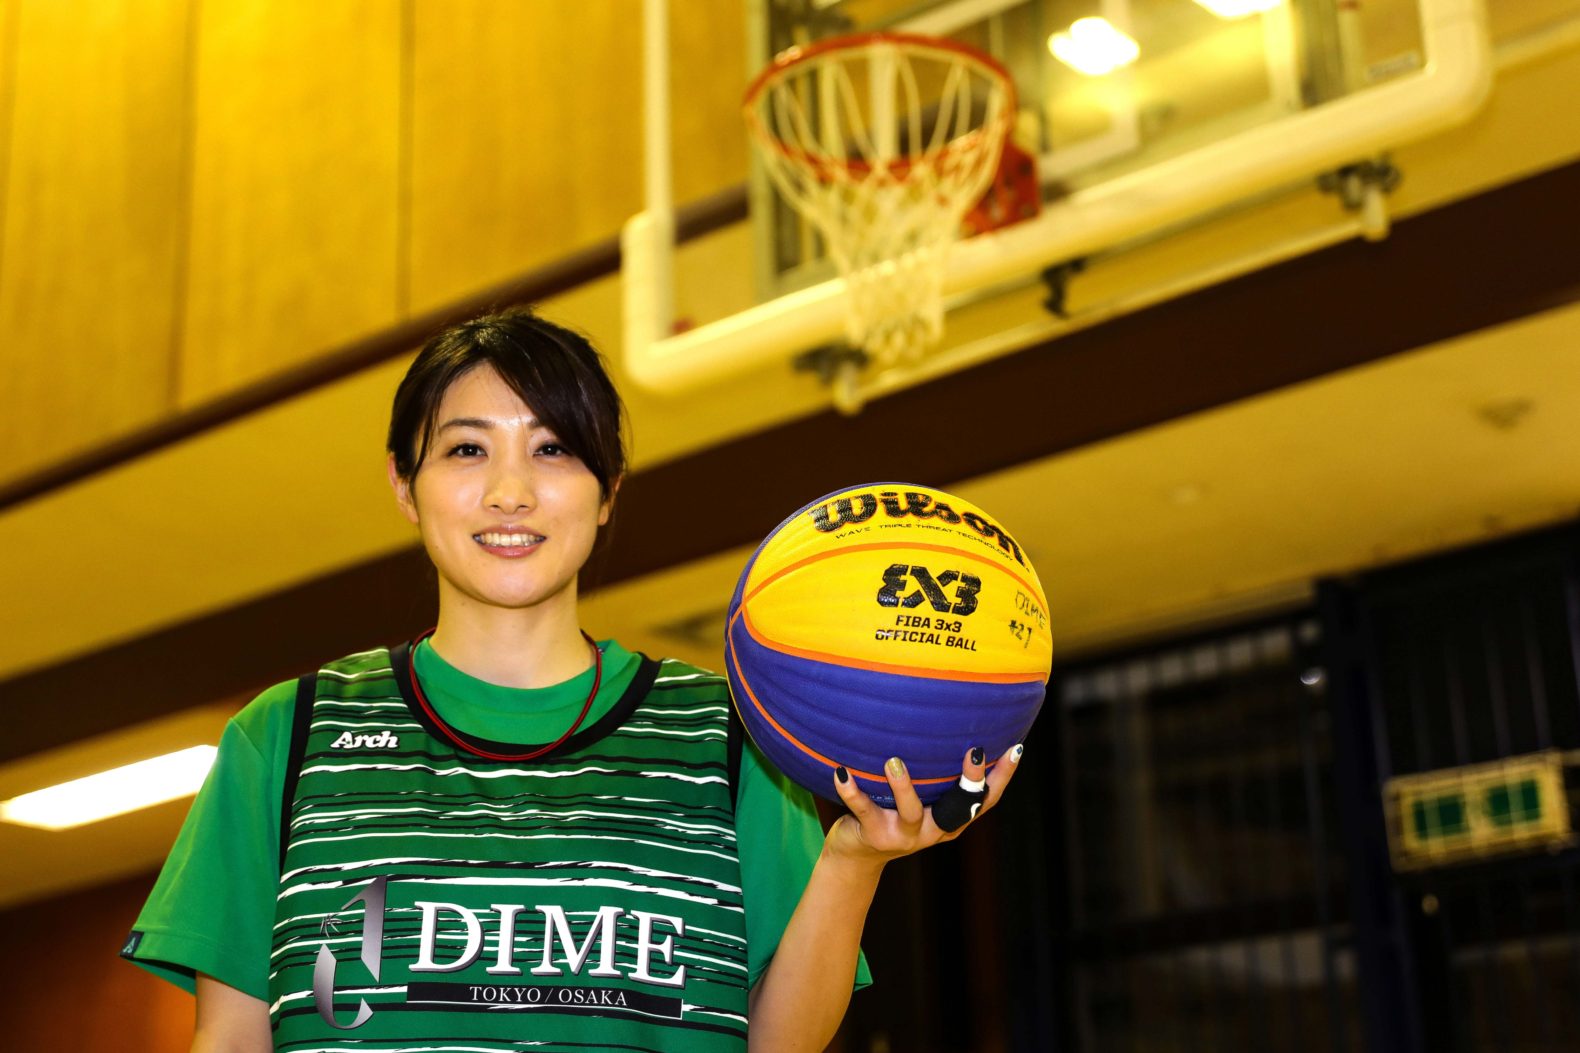 自分がチームの軸に 経験豊富なdimeのファイター 21有明葵衣 Ariake Aoi Tokyo Dime 東京ダイム 公式ウェブサイト Professional 3x3 Basketball Team